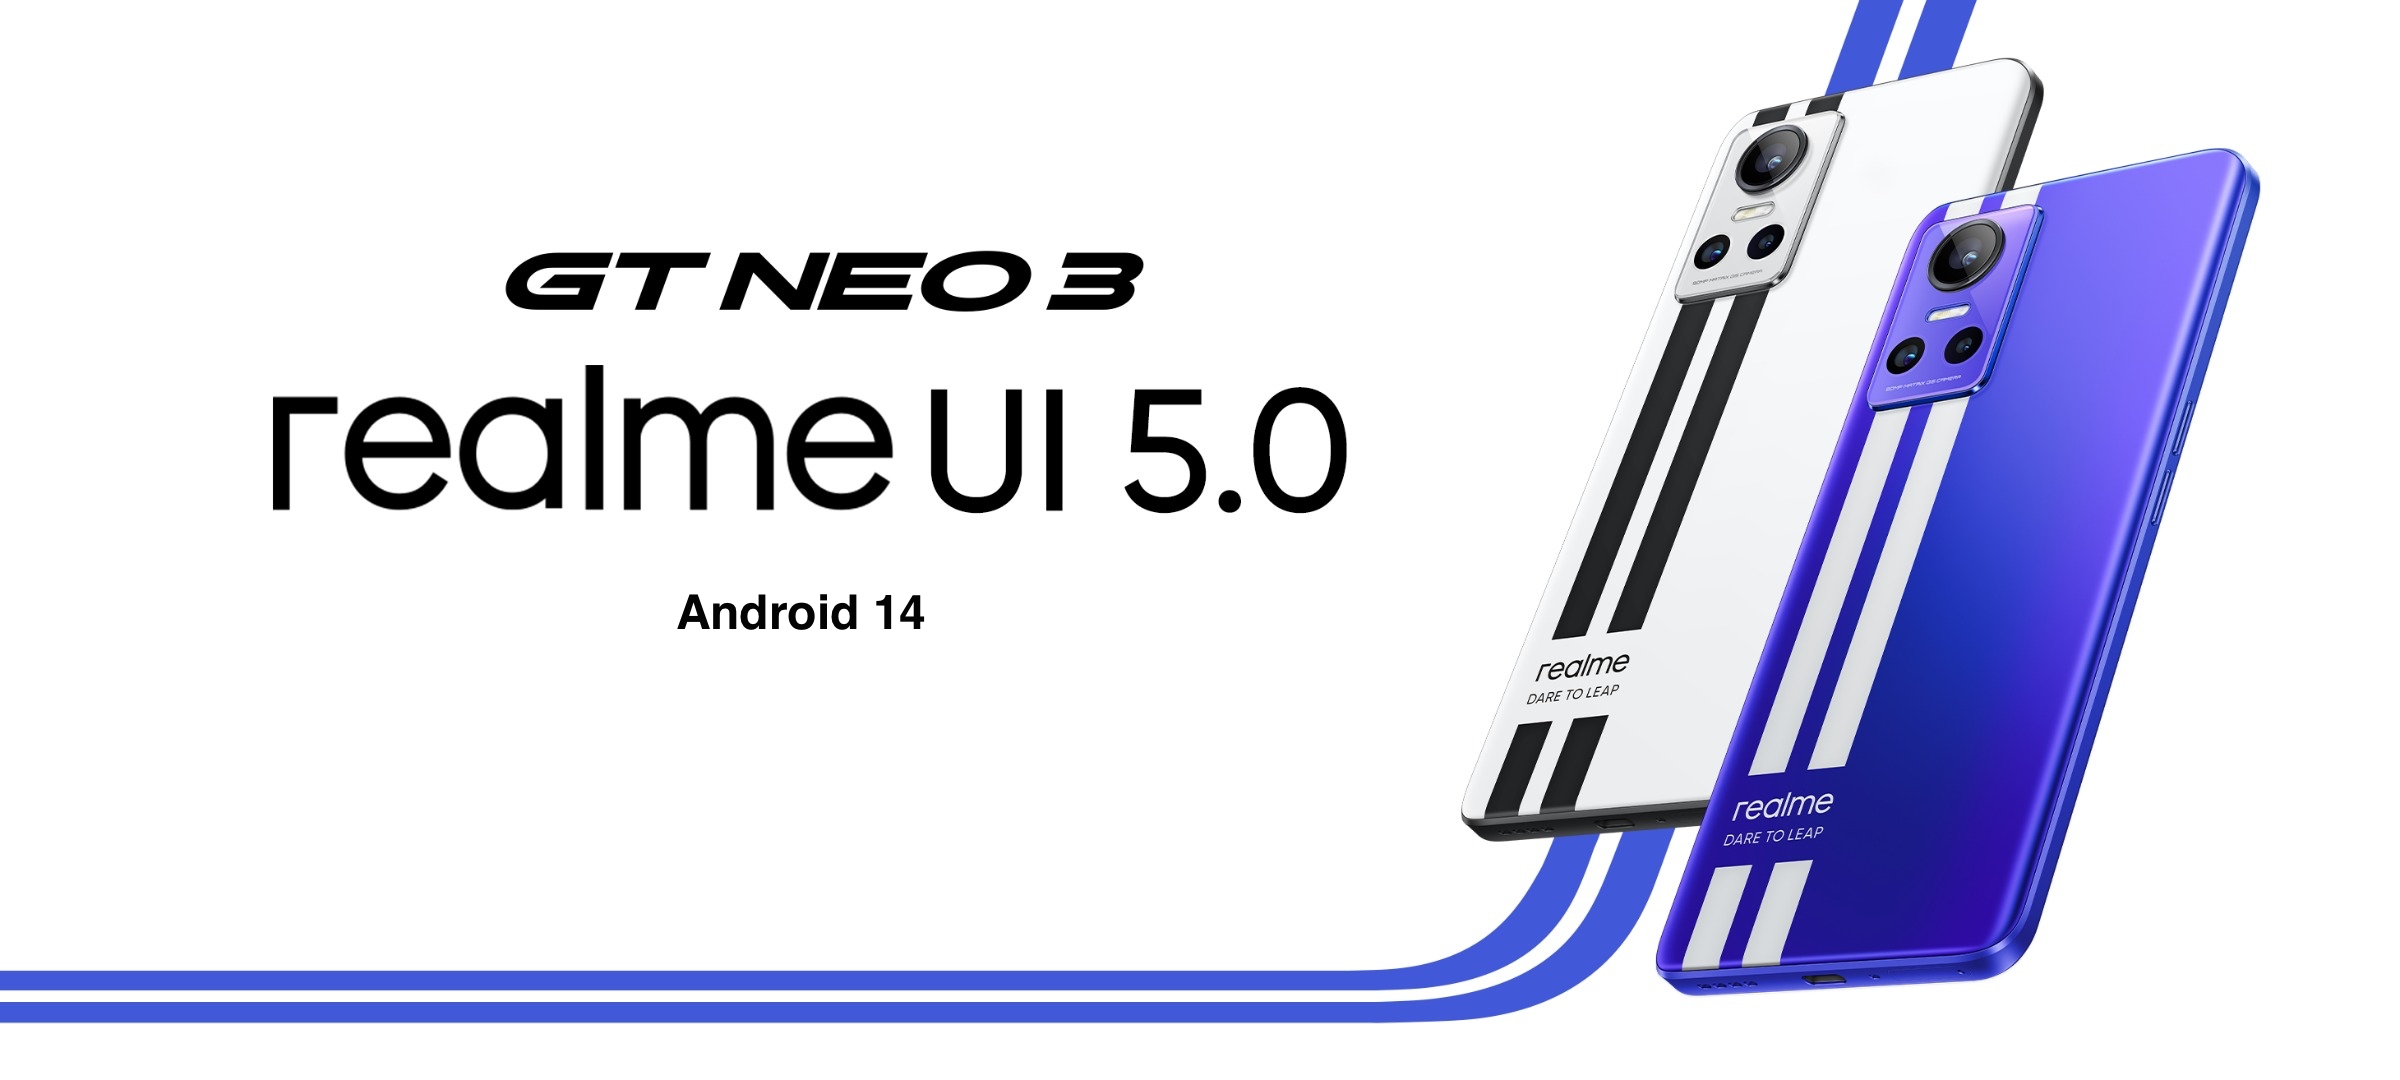 realme GT Neo 3 heeft de bètaversie van realme UI 5.0 met Android 14 aan boord ontvangen